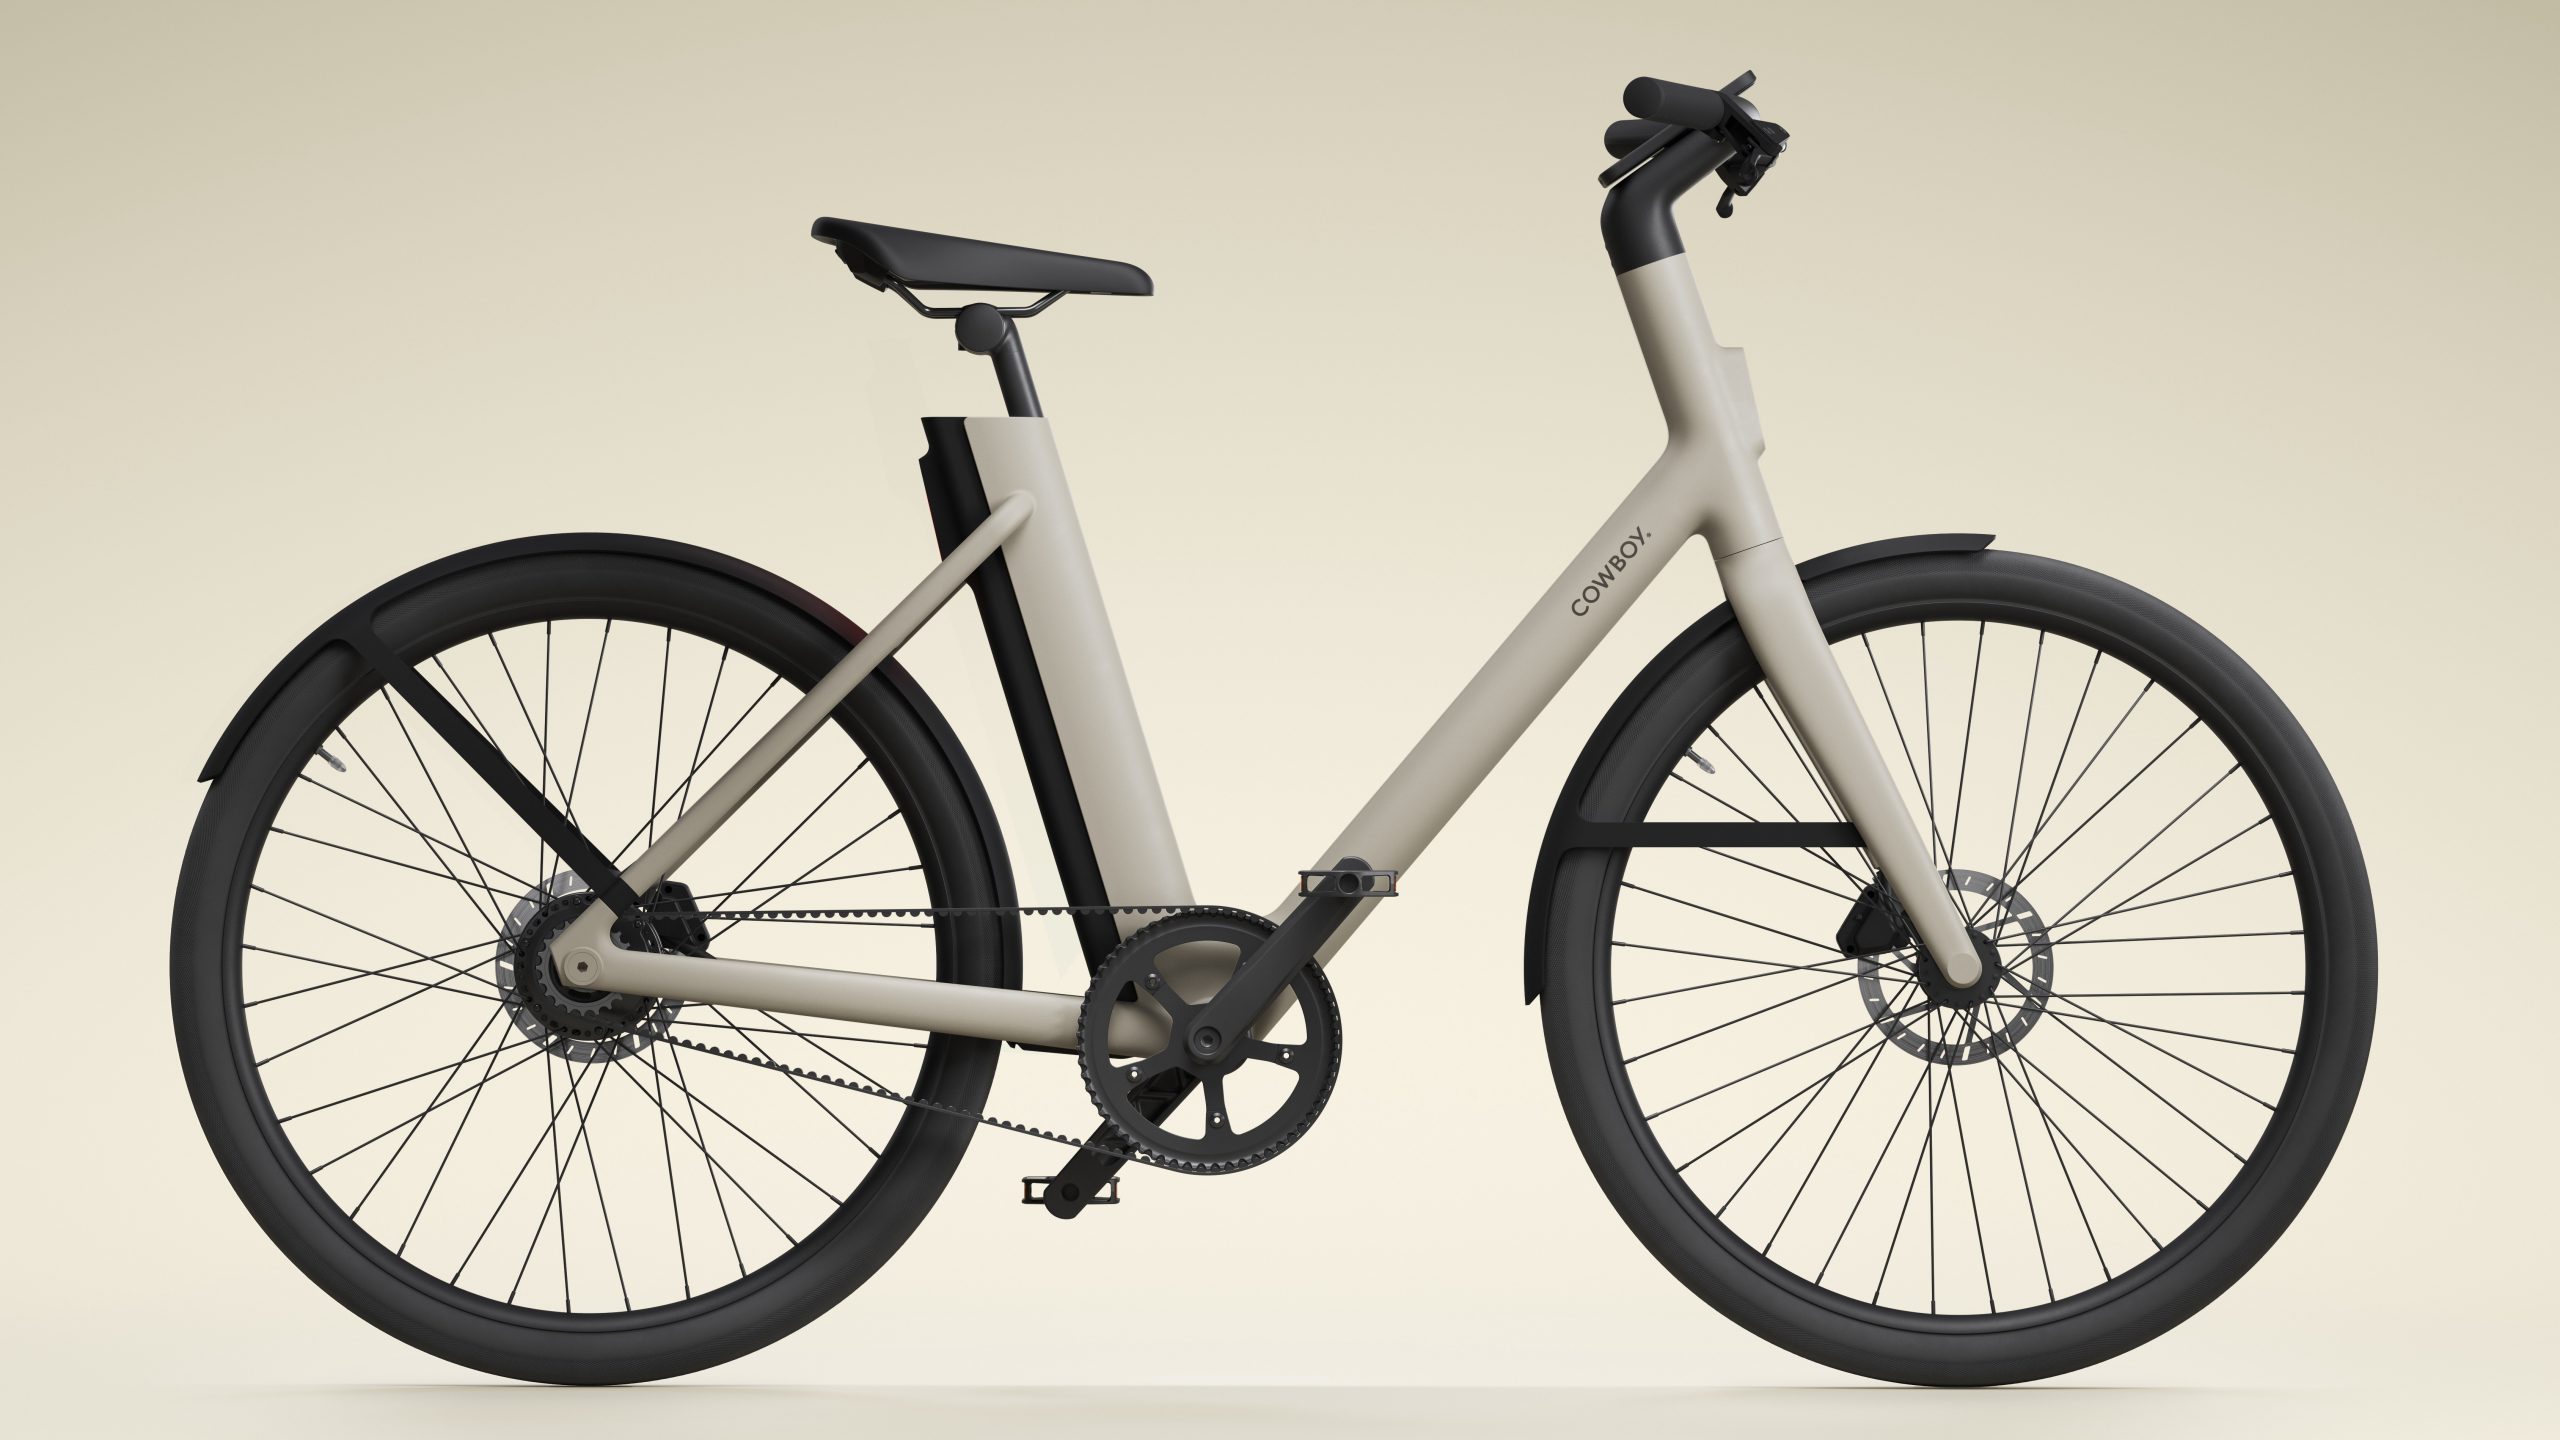 Minimalist Design Is Making E-bikes Prosper